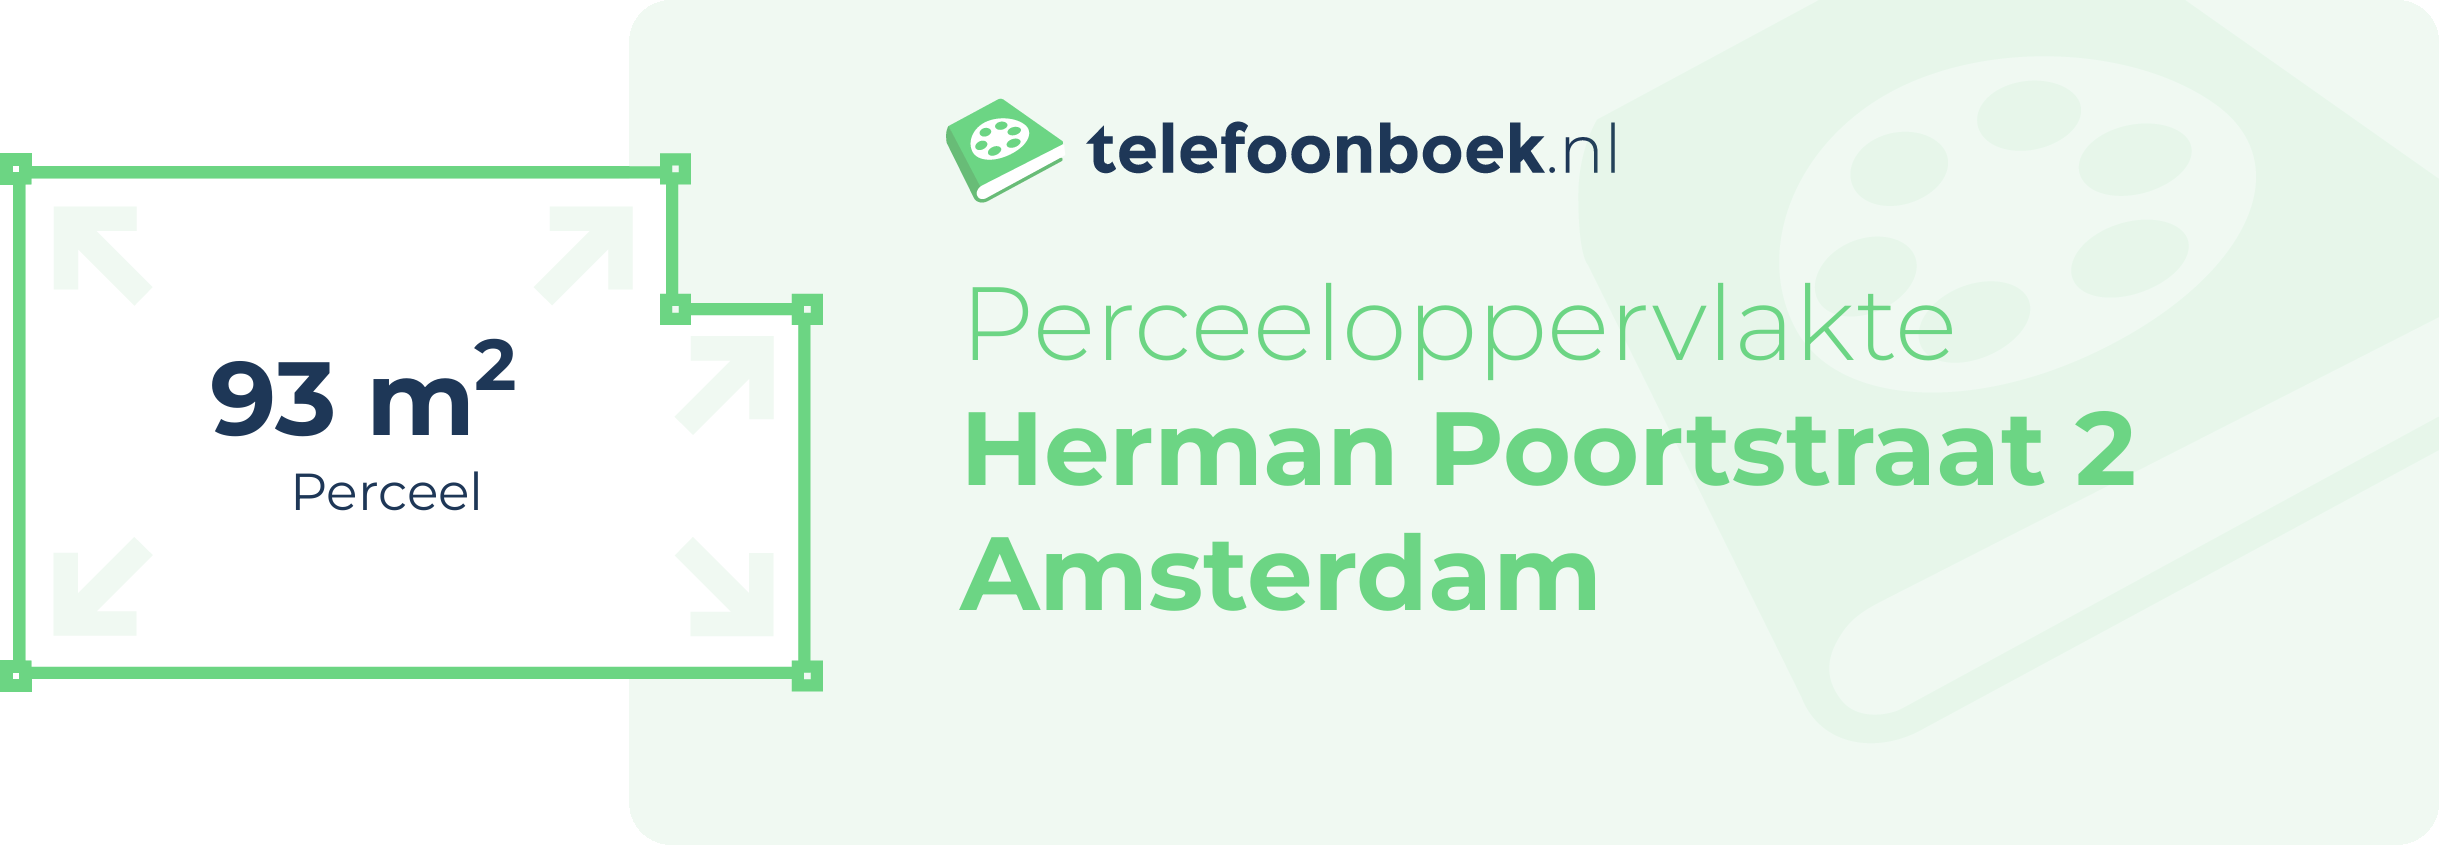 Perceeloppervlakte Herman Poortstraat 2 Amsterdam